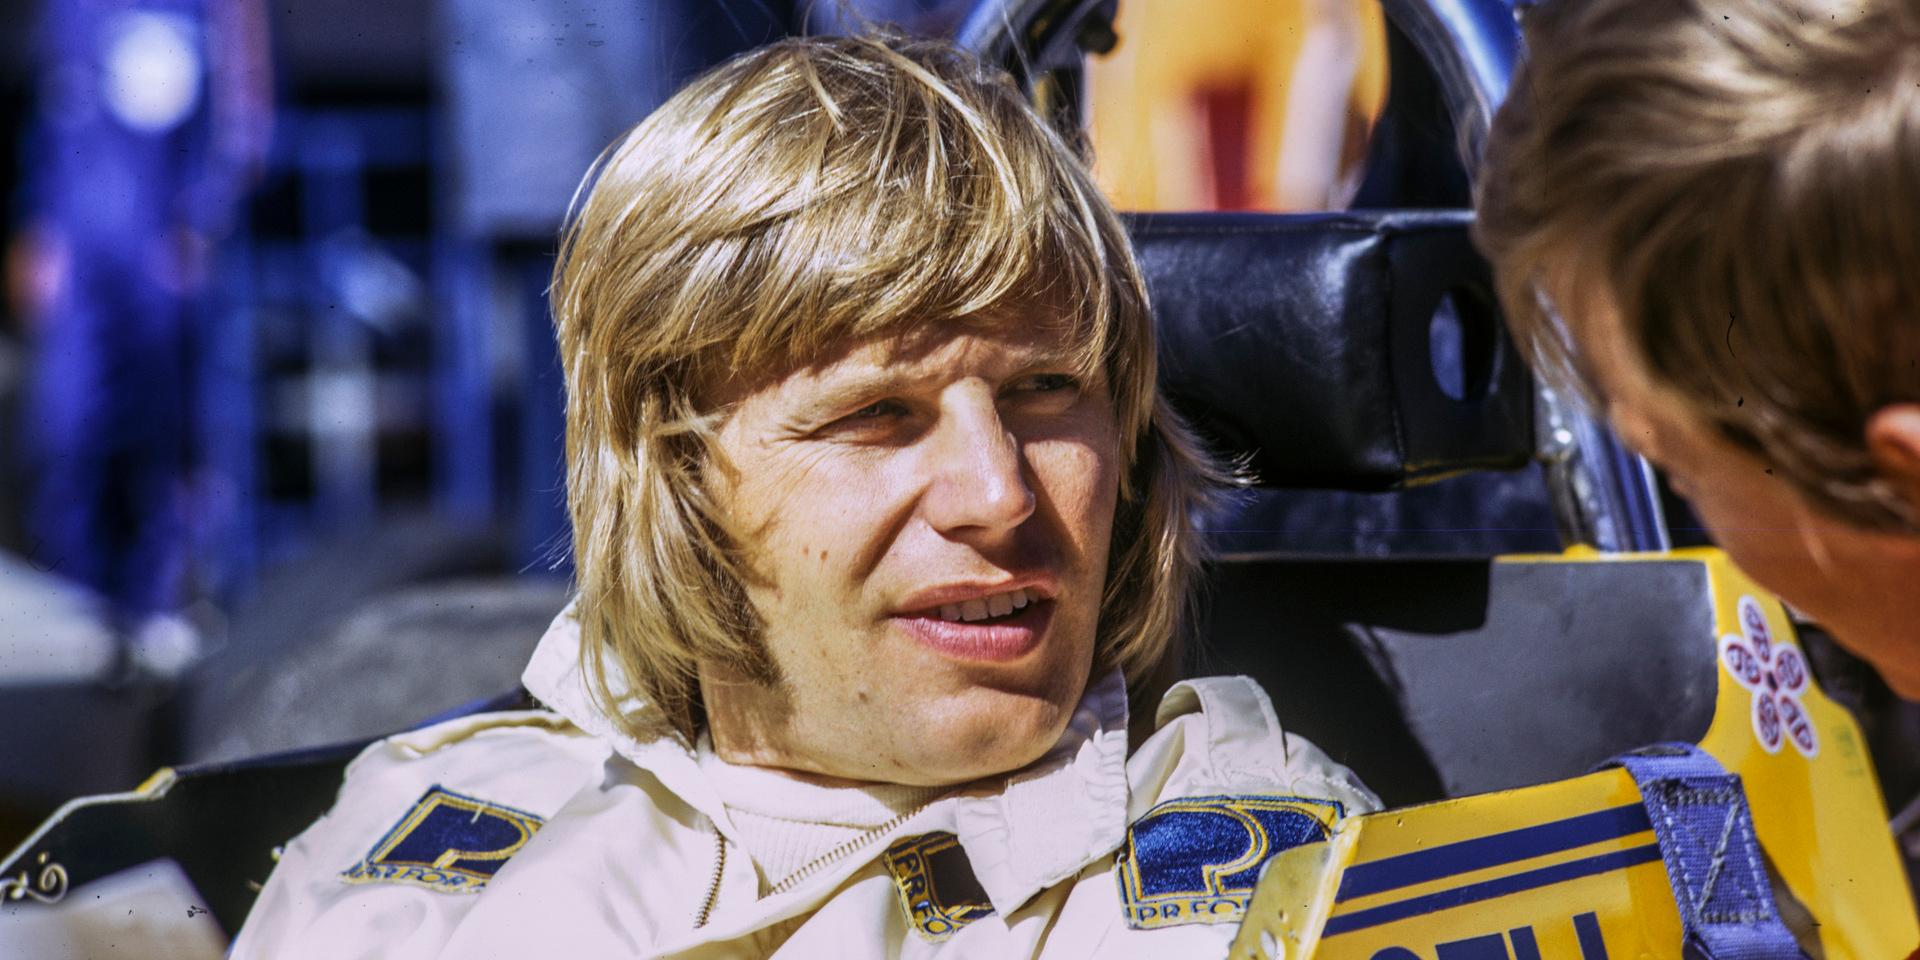 Racerföraren Reine Wisell. Bilden från 1973 togs i depån på Anderstorp.